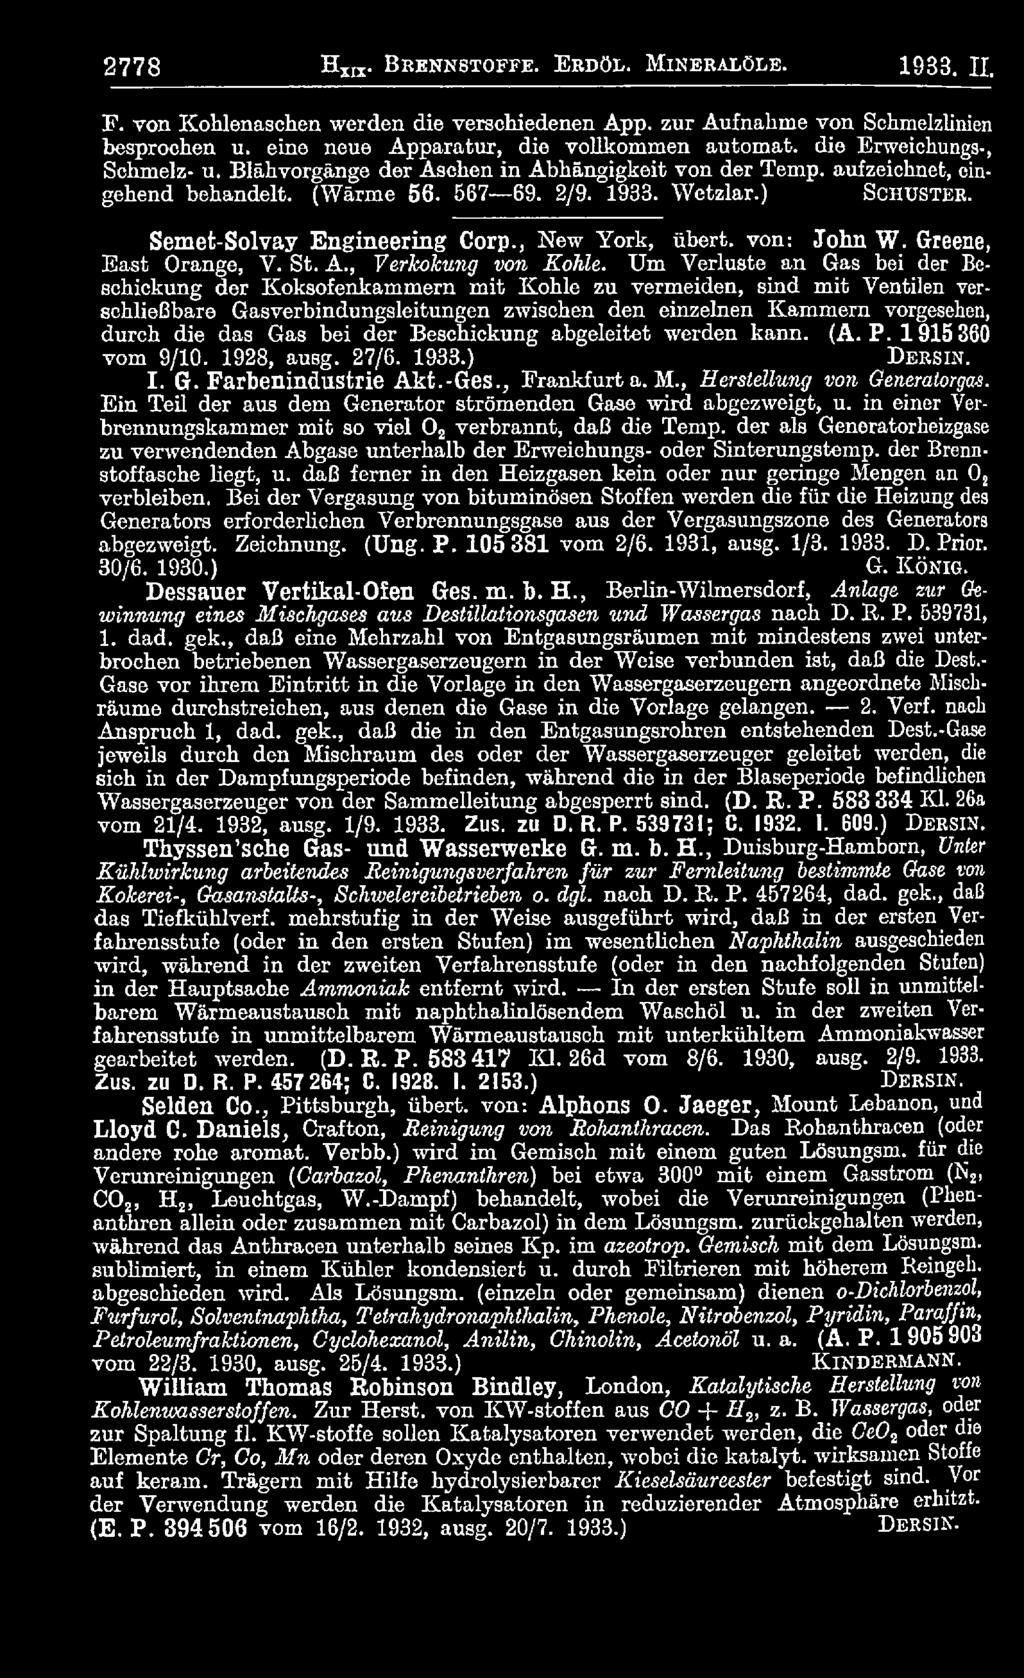 Gas bei der Beschickung abgeleitet werden kann. (A. P. 1915 360 vom 9/10. 1928, ausg. 27/6. 1933.) D e r s in. I. G. Farbenindustrie Akt.-Ges., Frankfurt a. M.